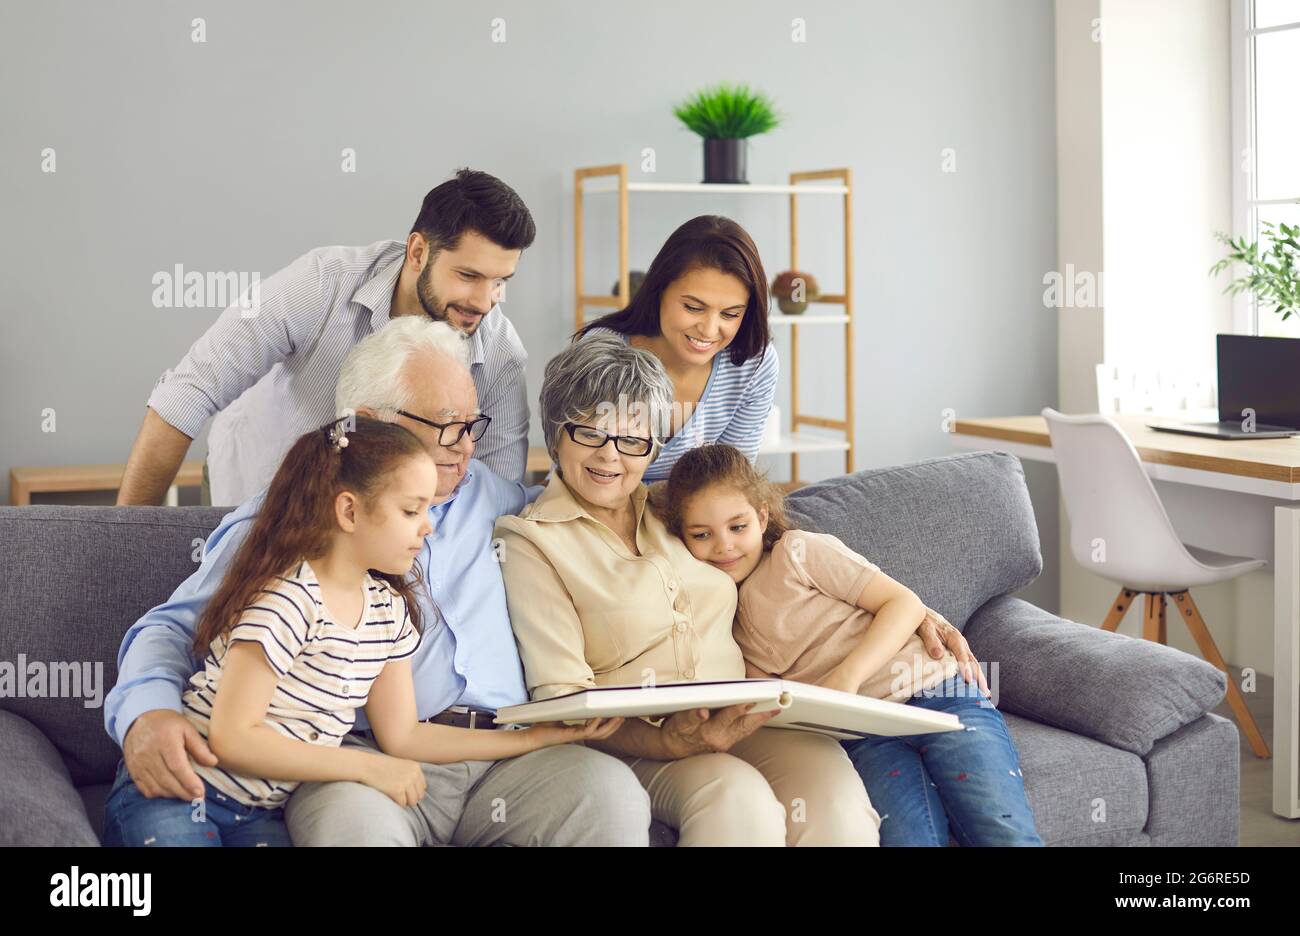 Une famille heureuse assise sur un canapé, lisant un livre ou regardant ensemble un album photo Banque D'Images